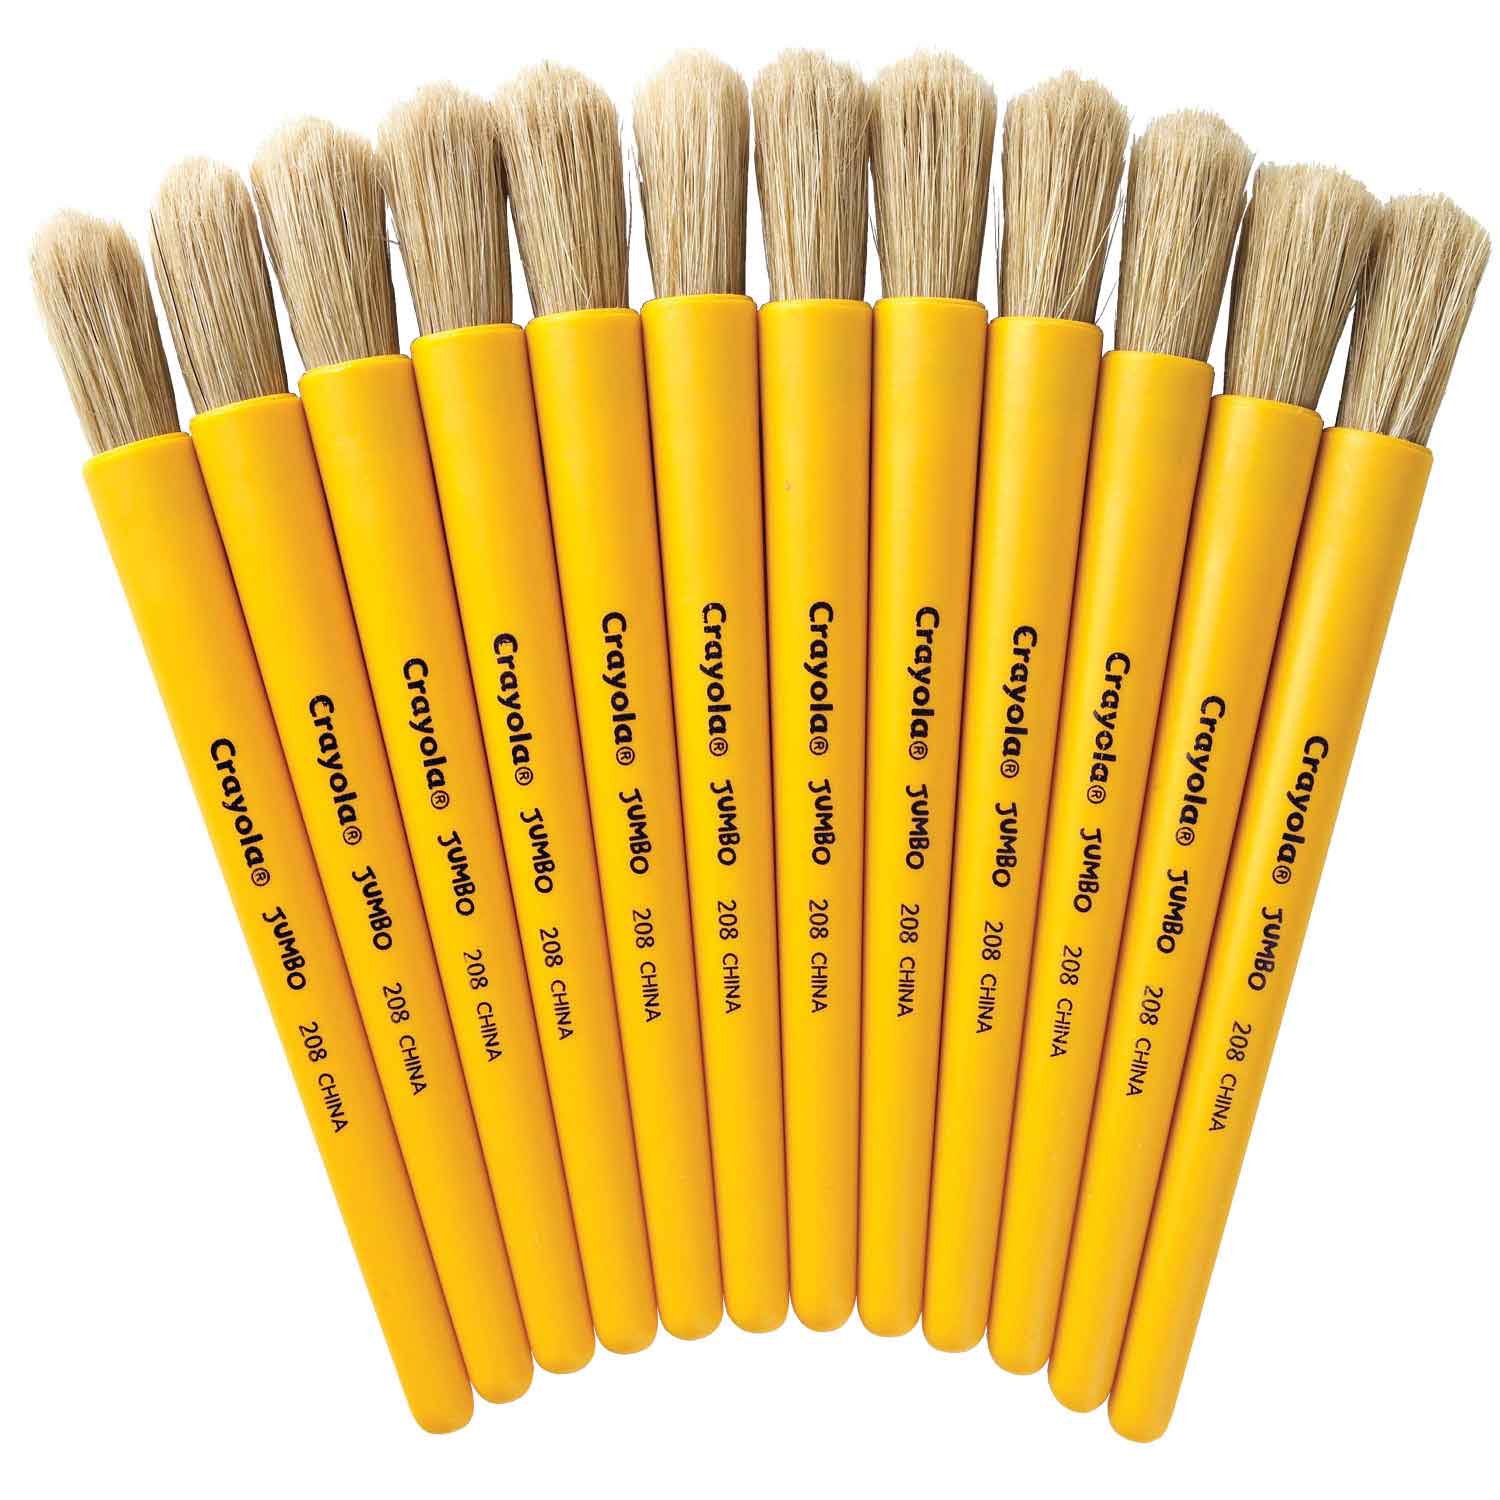 Jumbo Paint Brushes by Creatology®